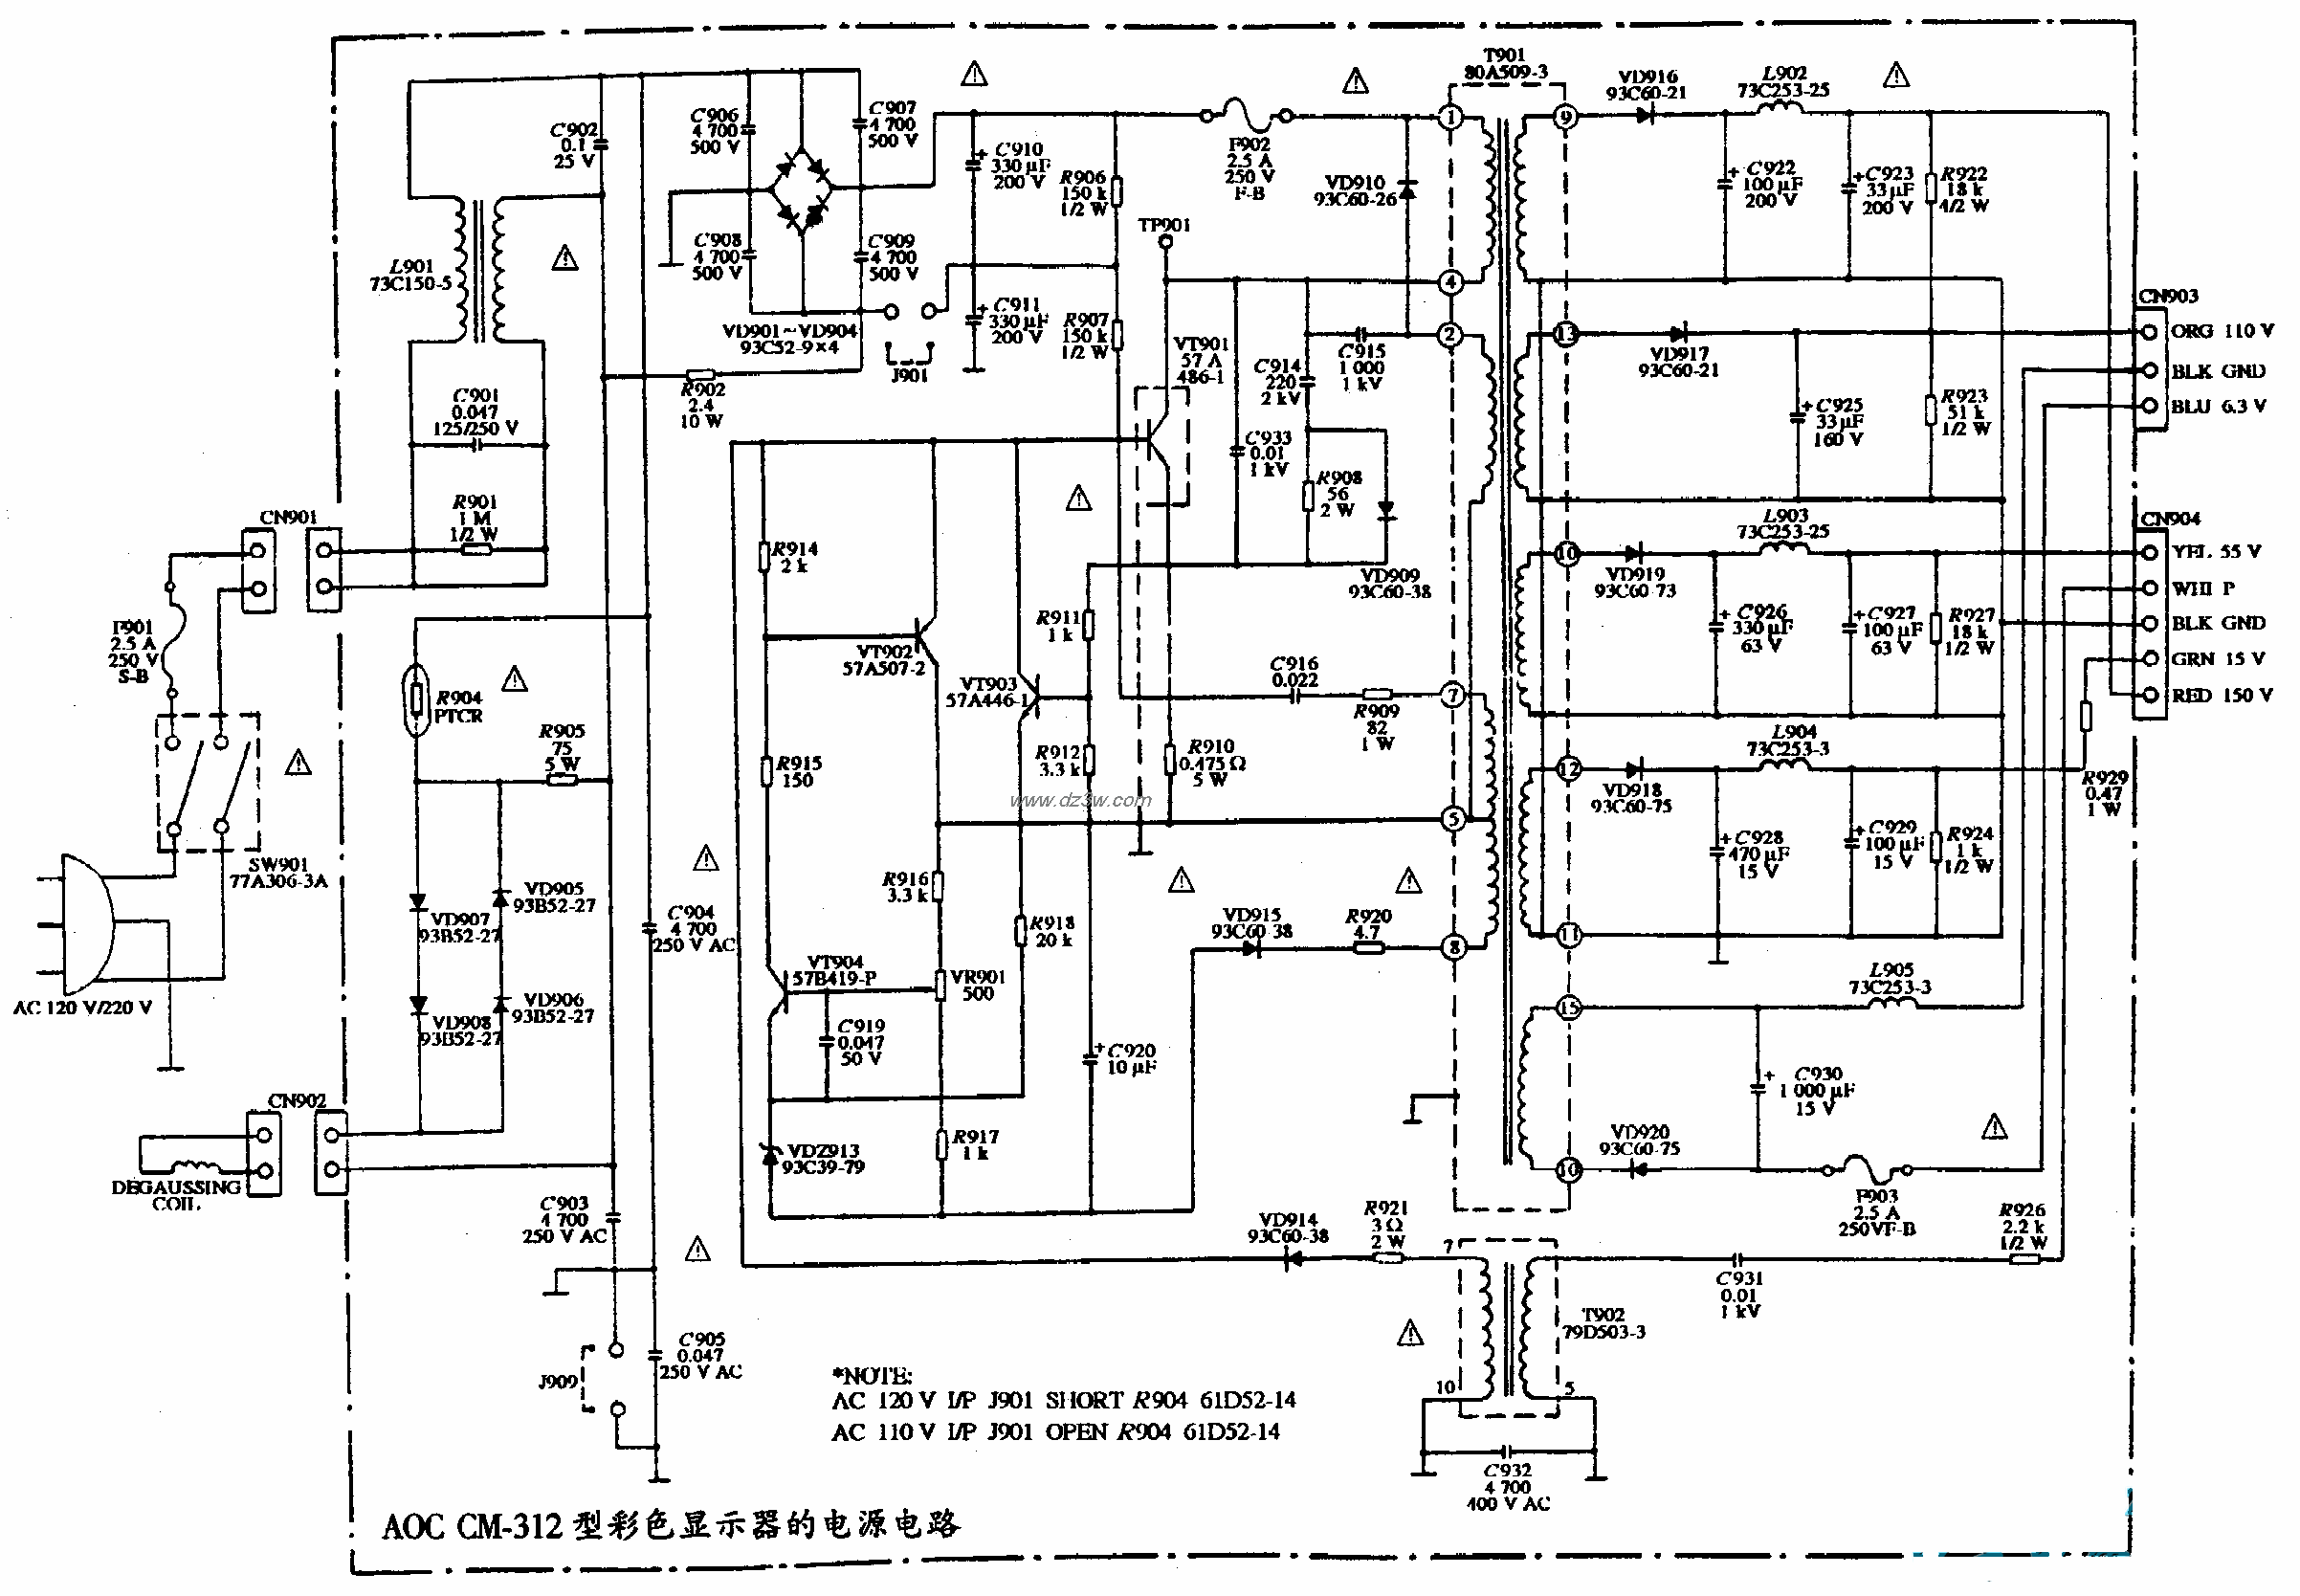 AOC CM-312型彩色顯示器的電源電路圖